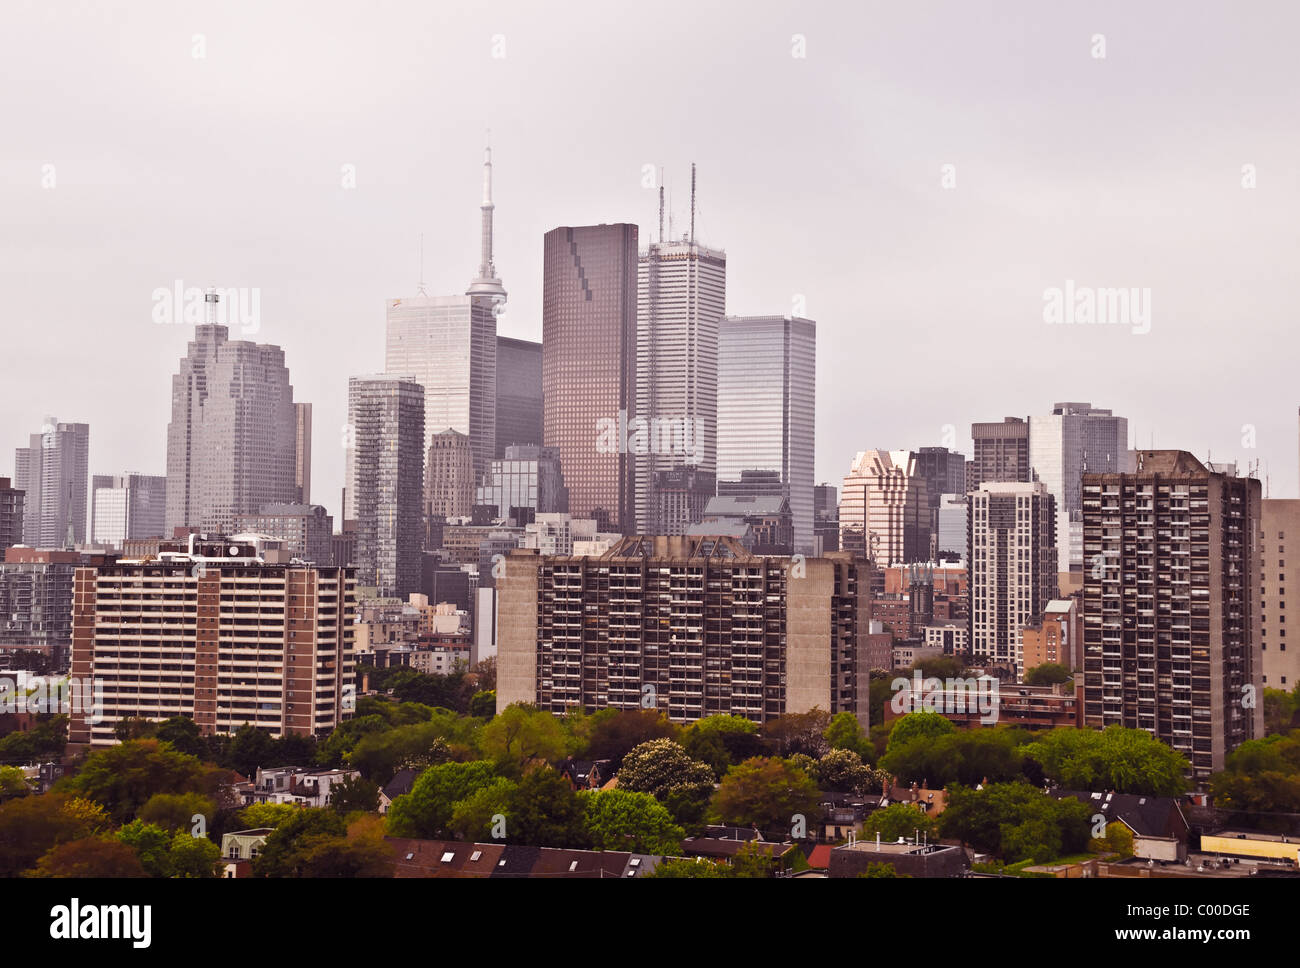 Un horizonte de edificios de oficinas y apartamentos en el centro y el barrio residencial de Cabbagetown en primer plano, Toronto, Ontario, Canadá. Foto de stock